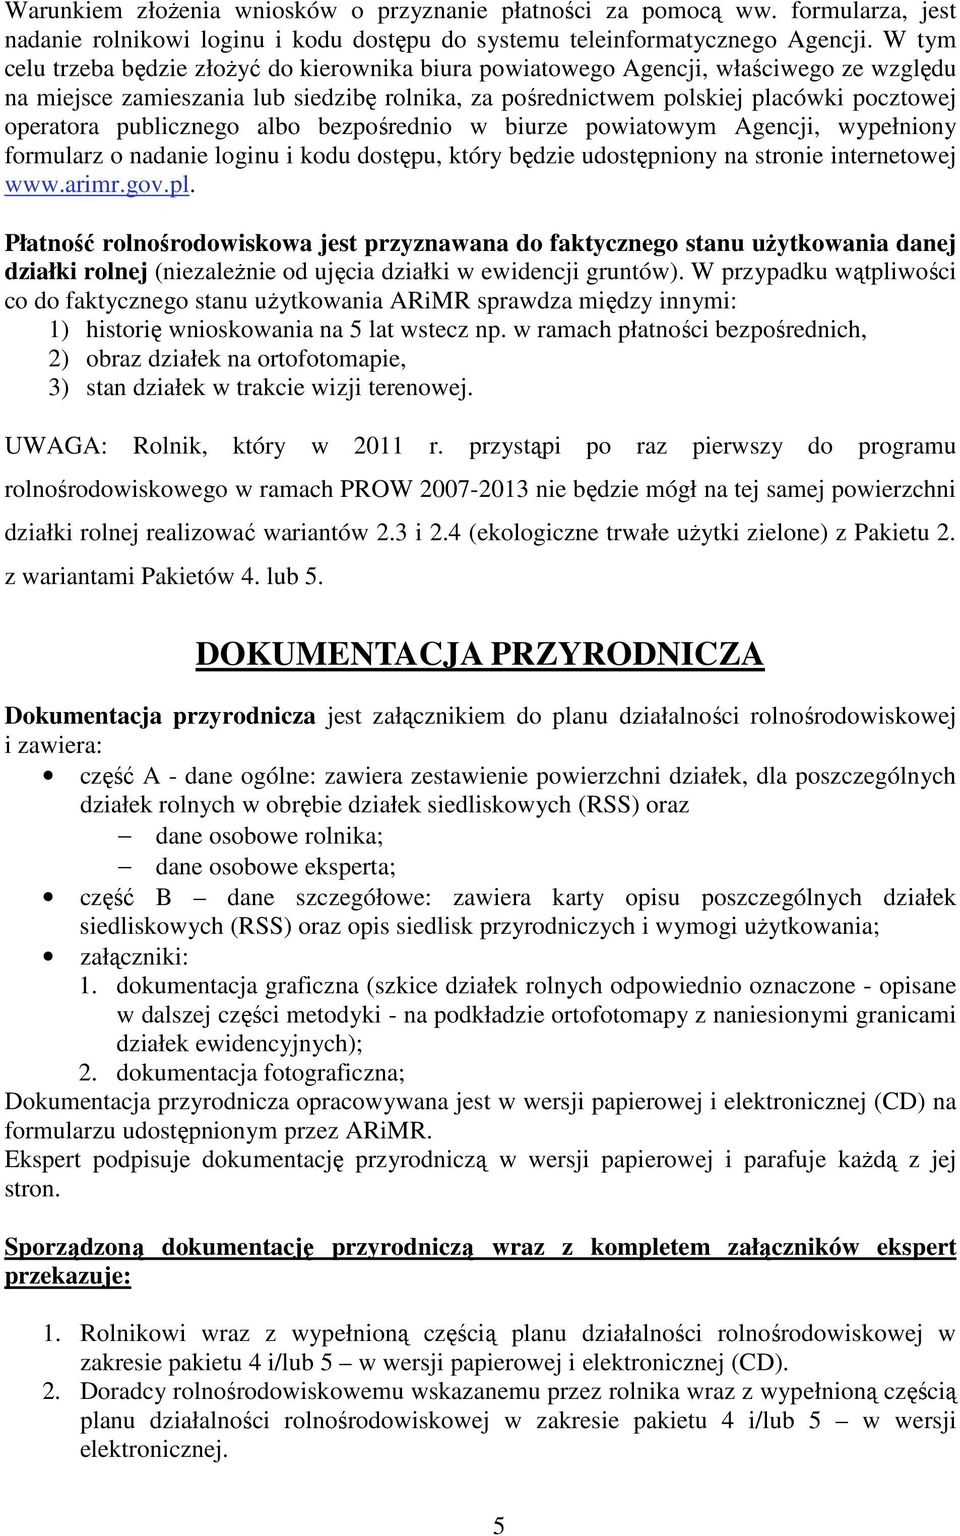 publicznego albo bezpośrednio w biurze powiatowym Agencji, wypełniony formularz o nadanie loginu i kodu dostępu, który będzie udostępniony na stronie internetowej www.arimr.gov.pl.